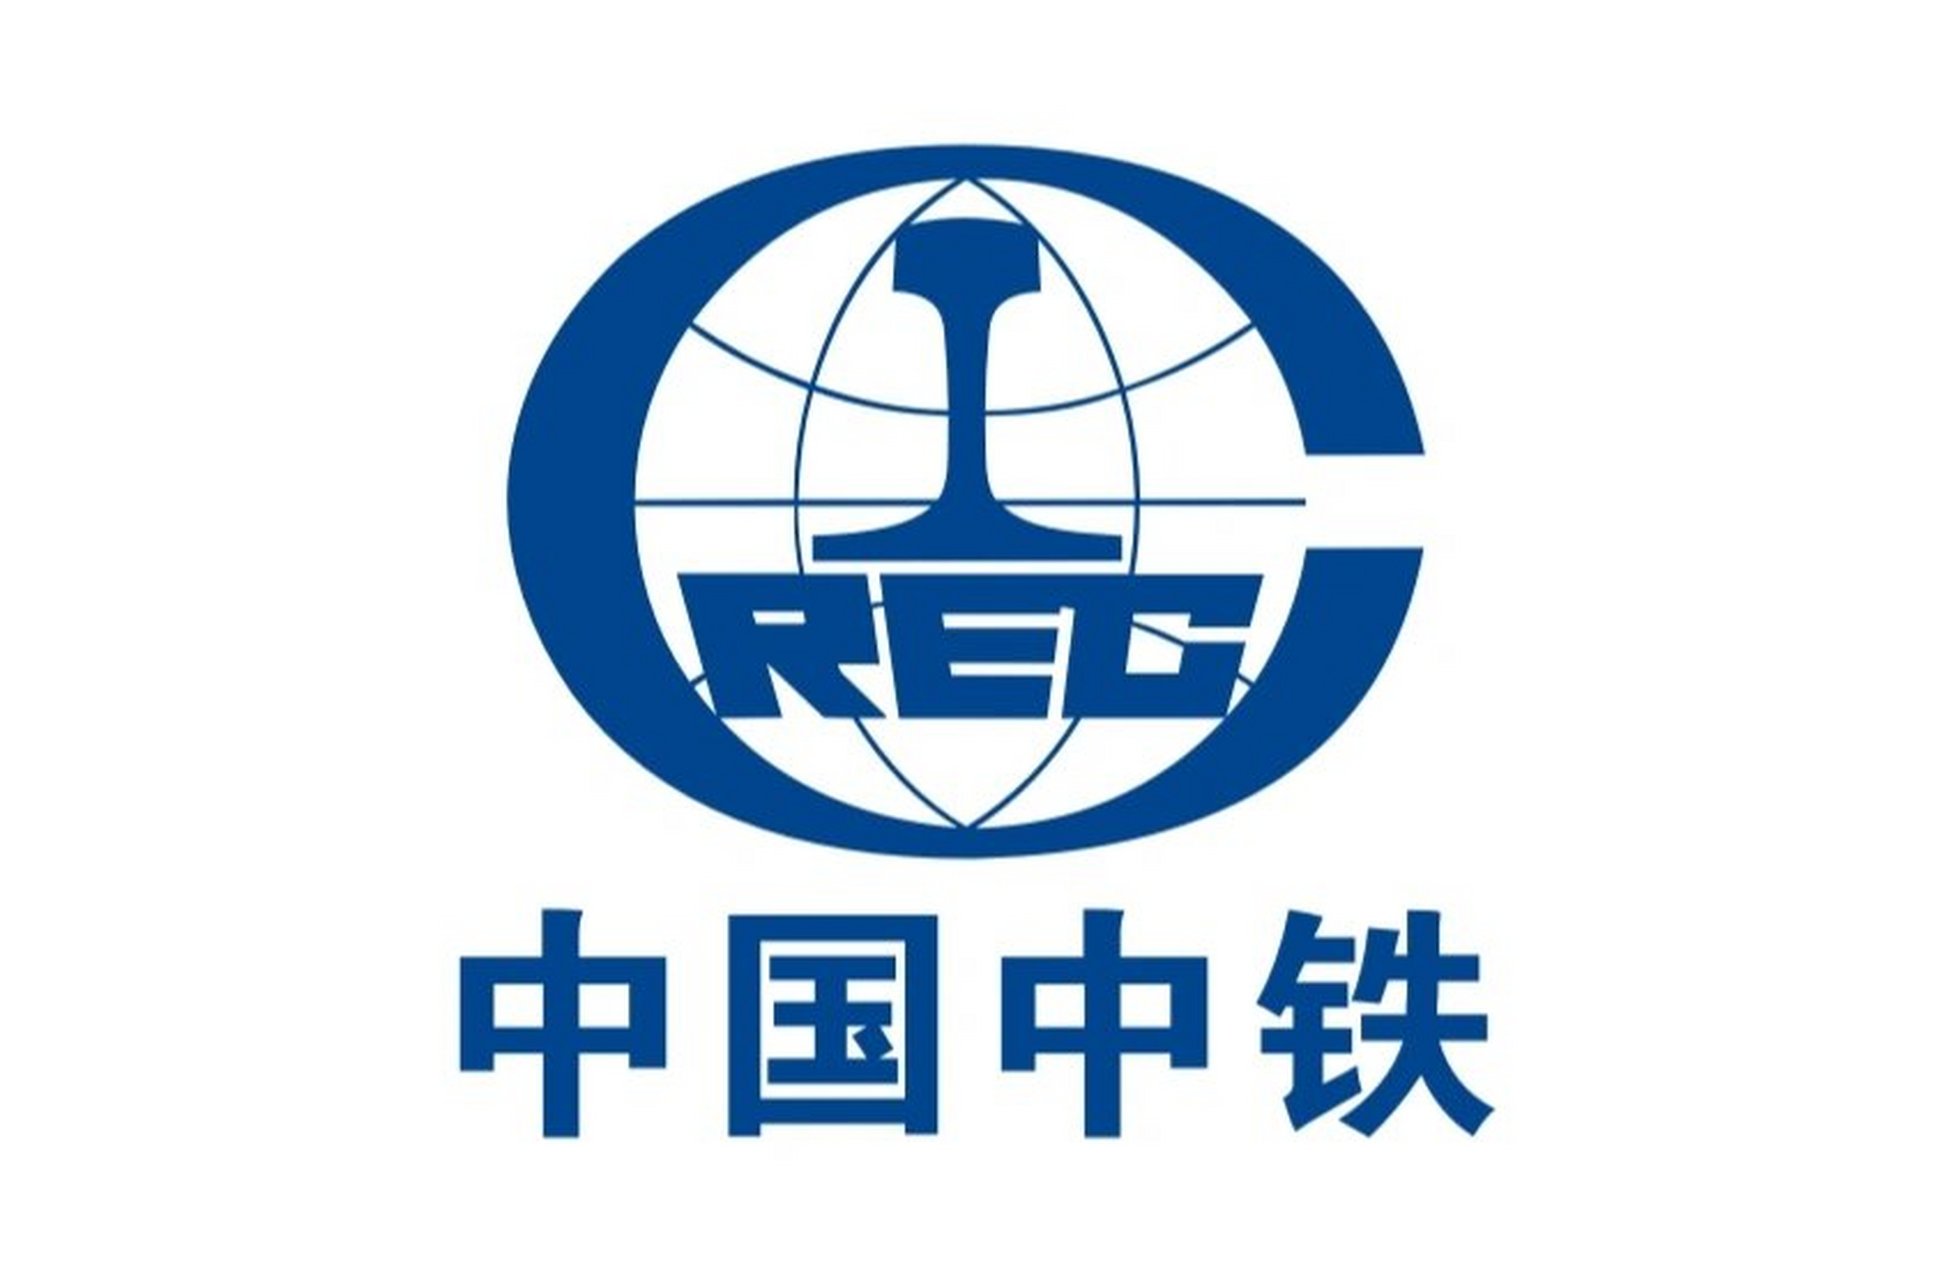 中国中铁集团信息介绍 中国铁路工程总公司( crec )是中国及亚洲最大